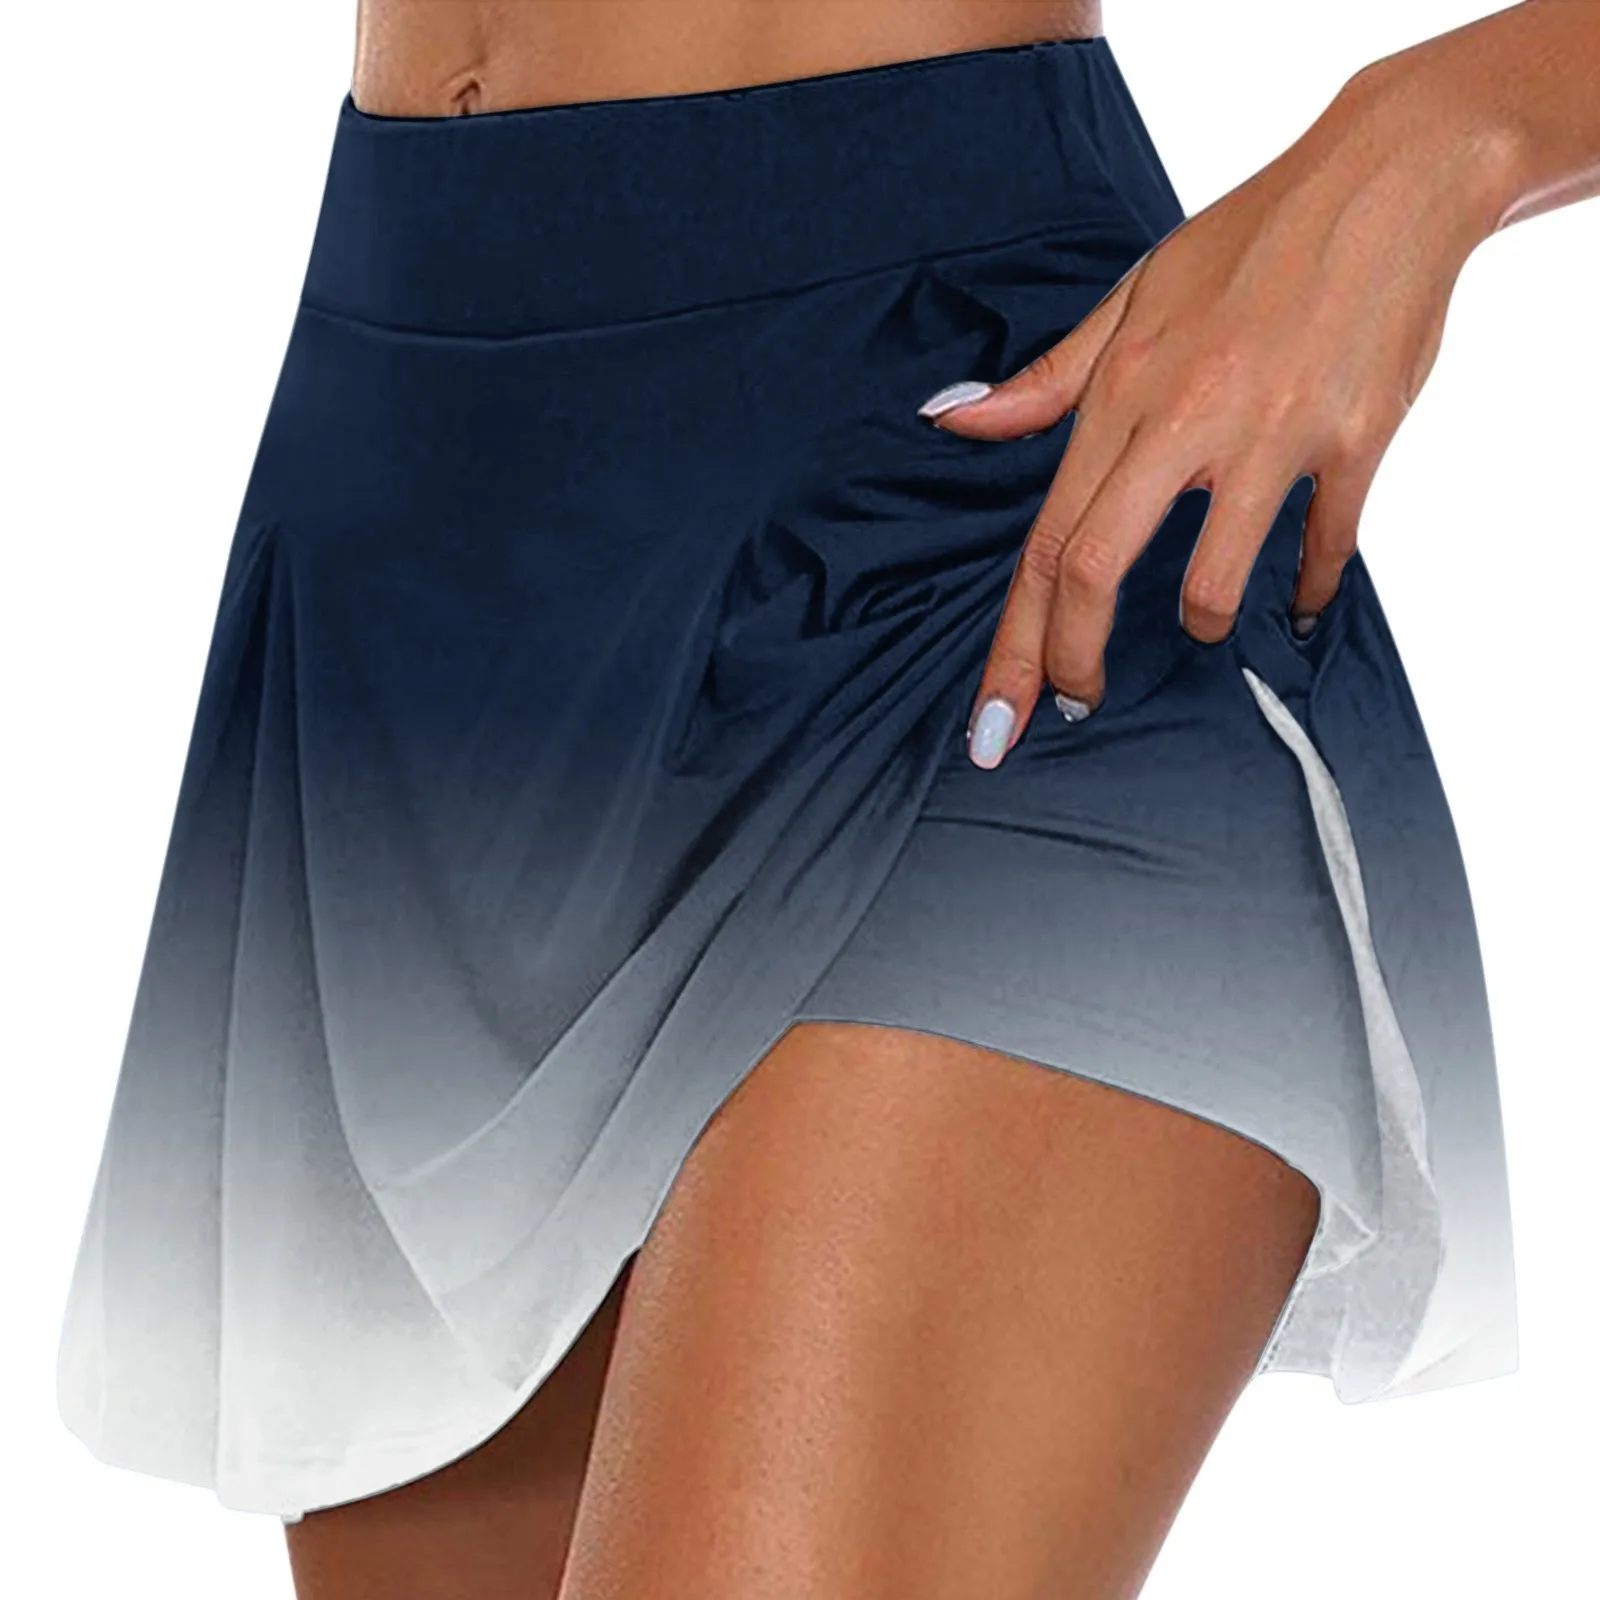 New In Skirts For Women Trendy Summer Prints Tennis Golf Skirt Yoga Sport Active Shorts Skirt Streetwear Women's Short Skirt -S5750d78951e74df89347f576b4ab0f53w